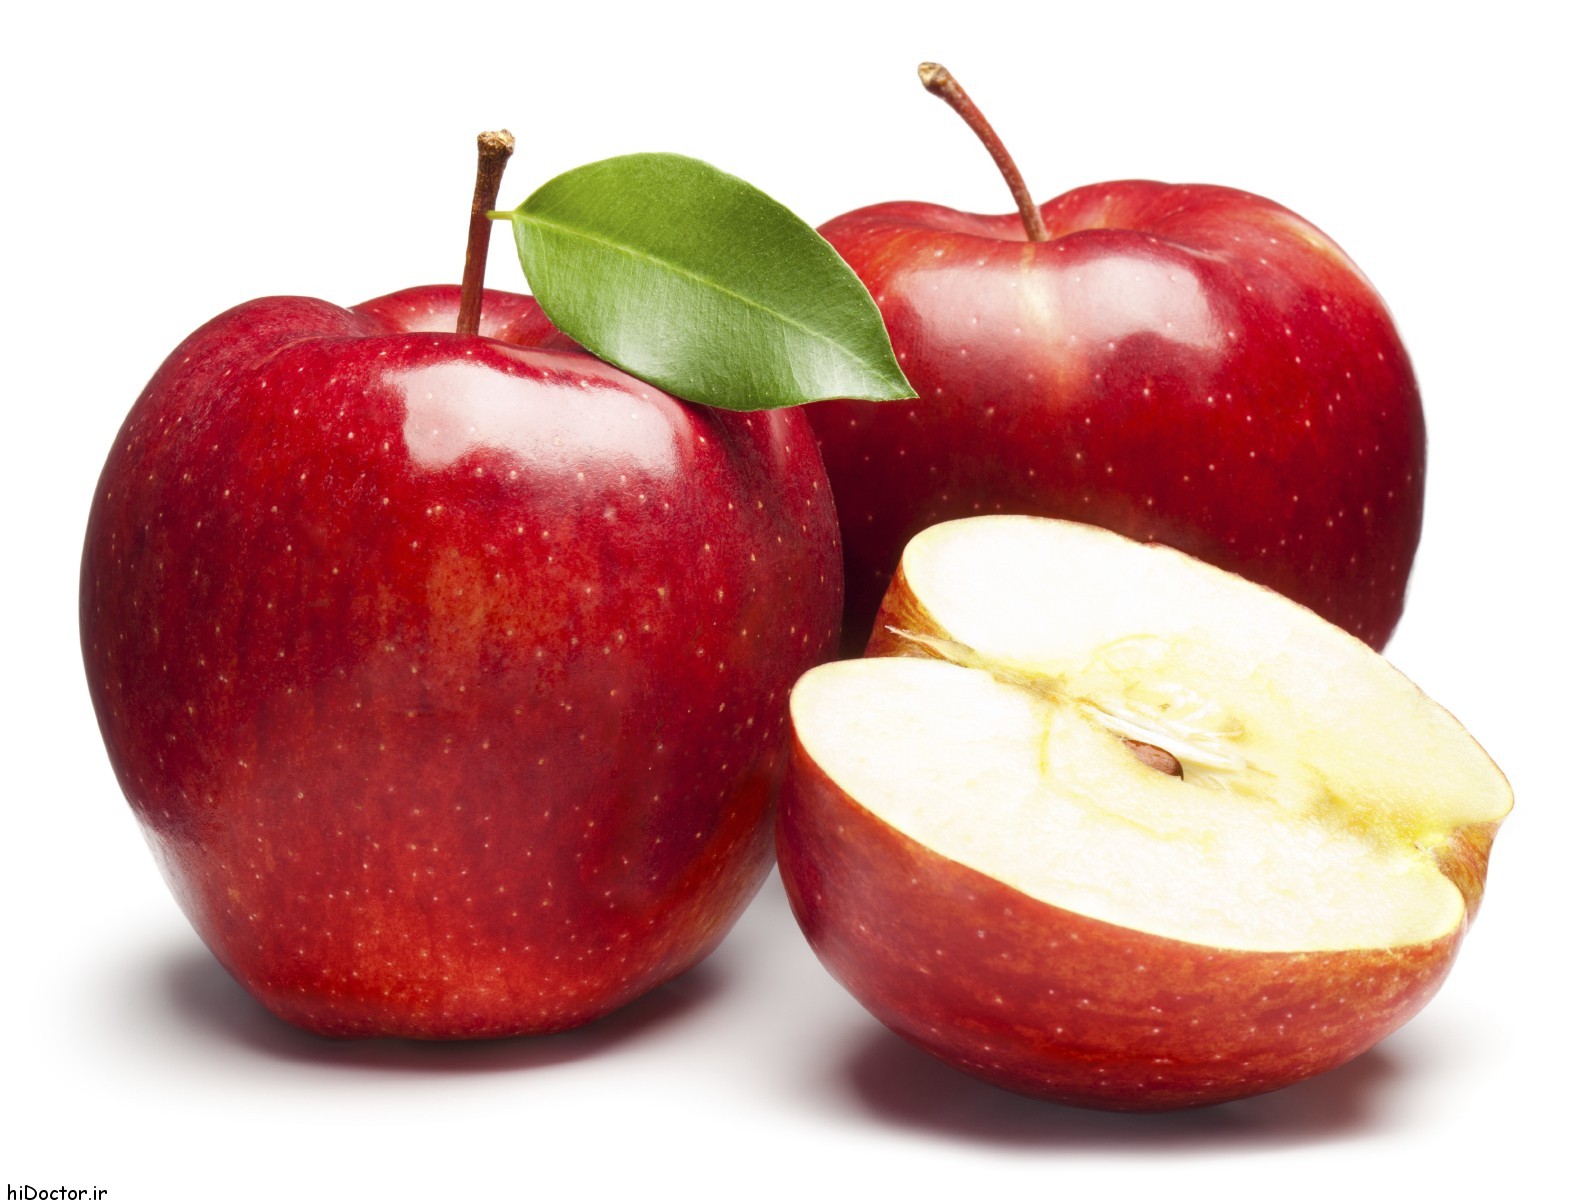 عکس های میوه سیب - نماد معروف سلامتی